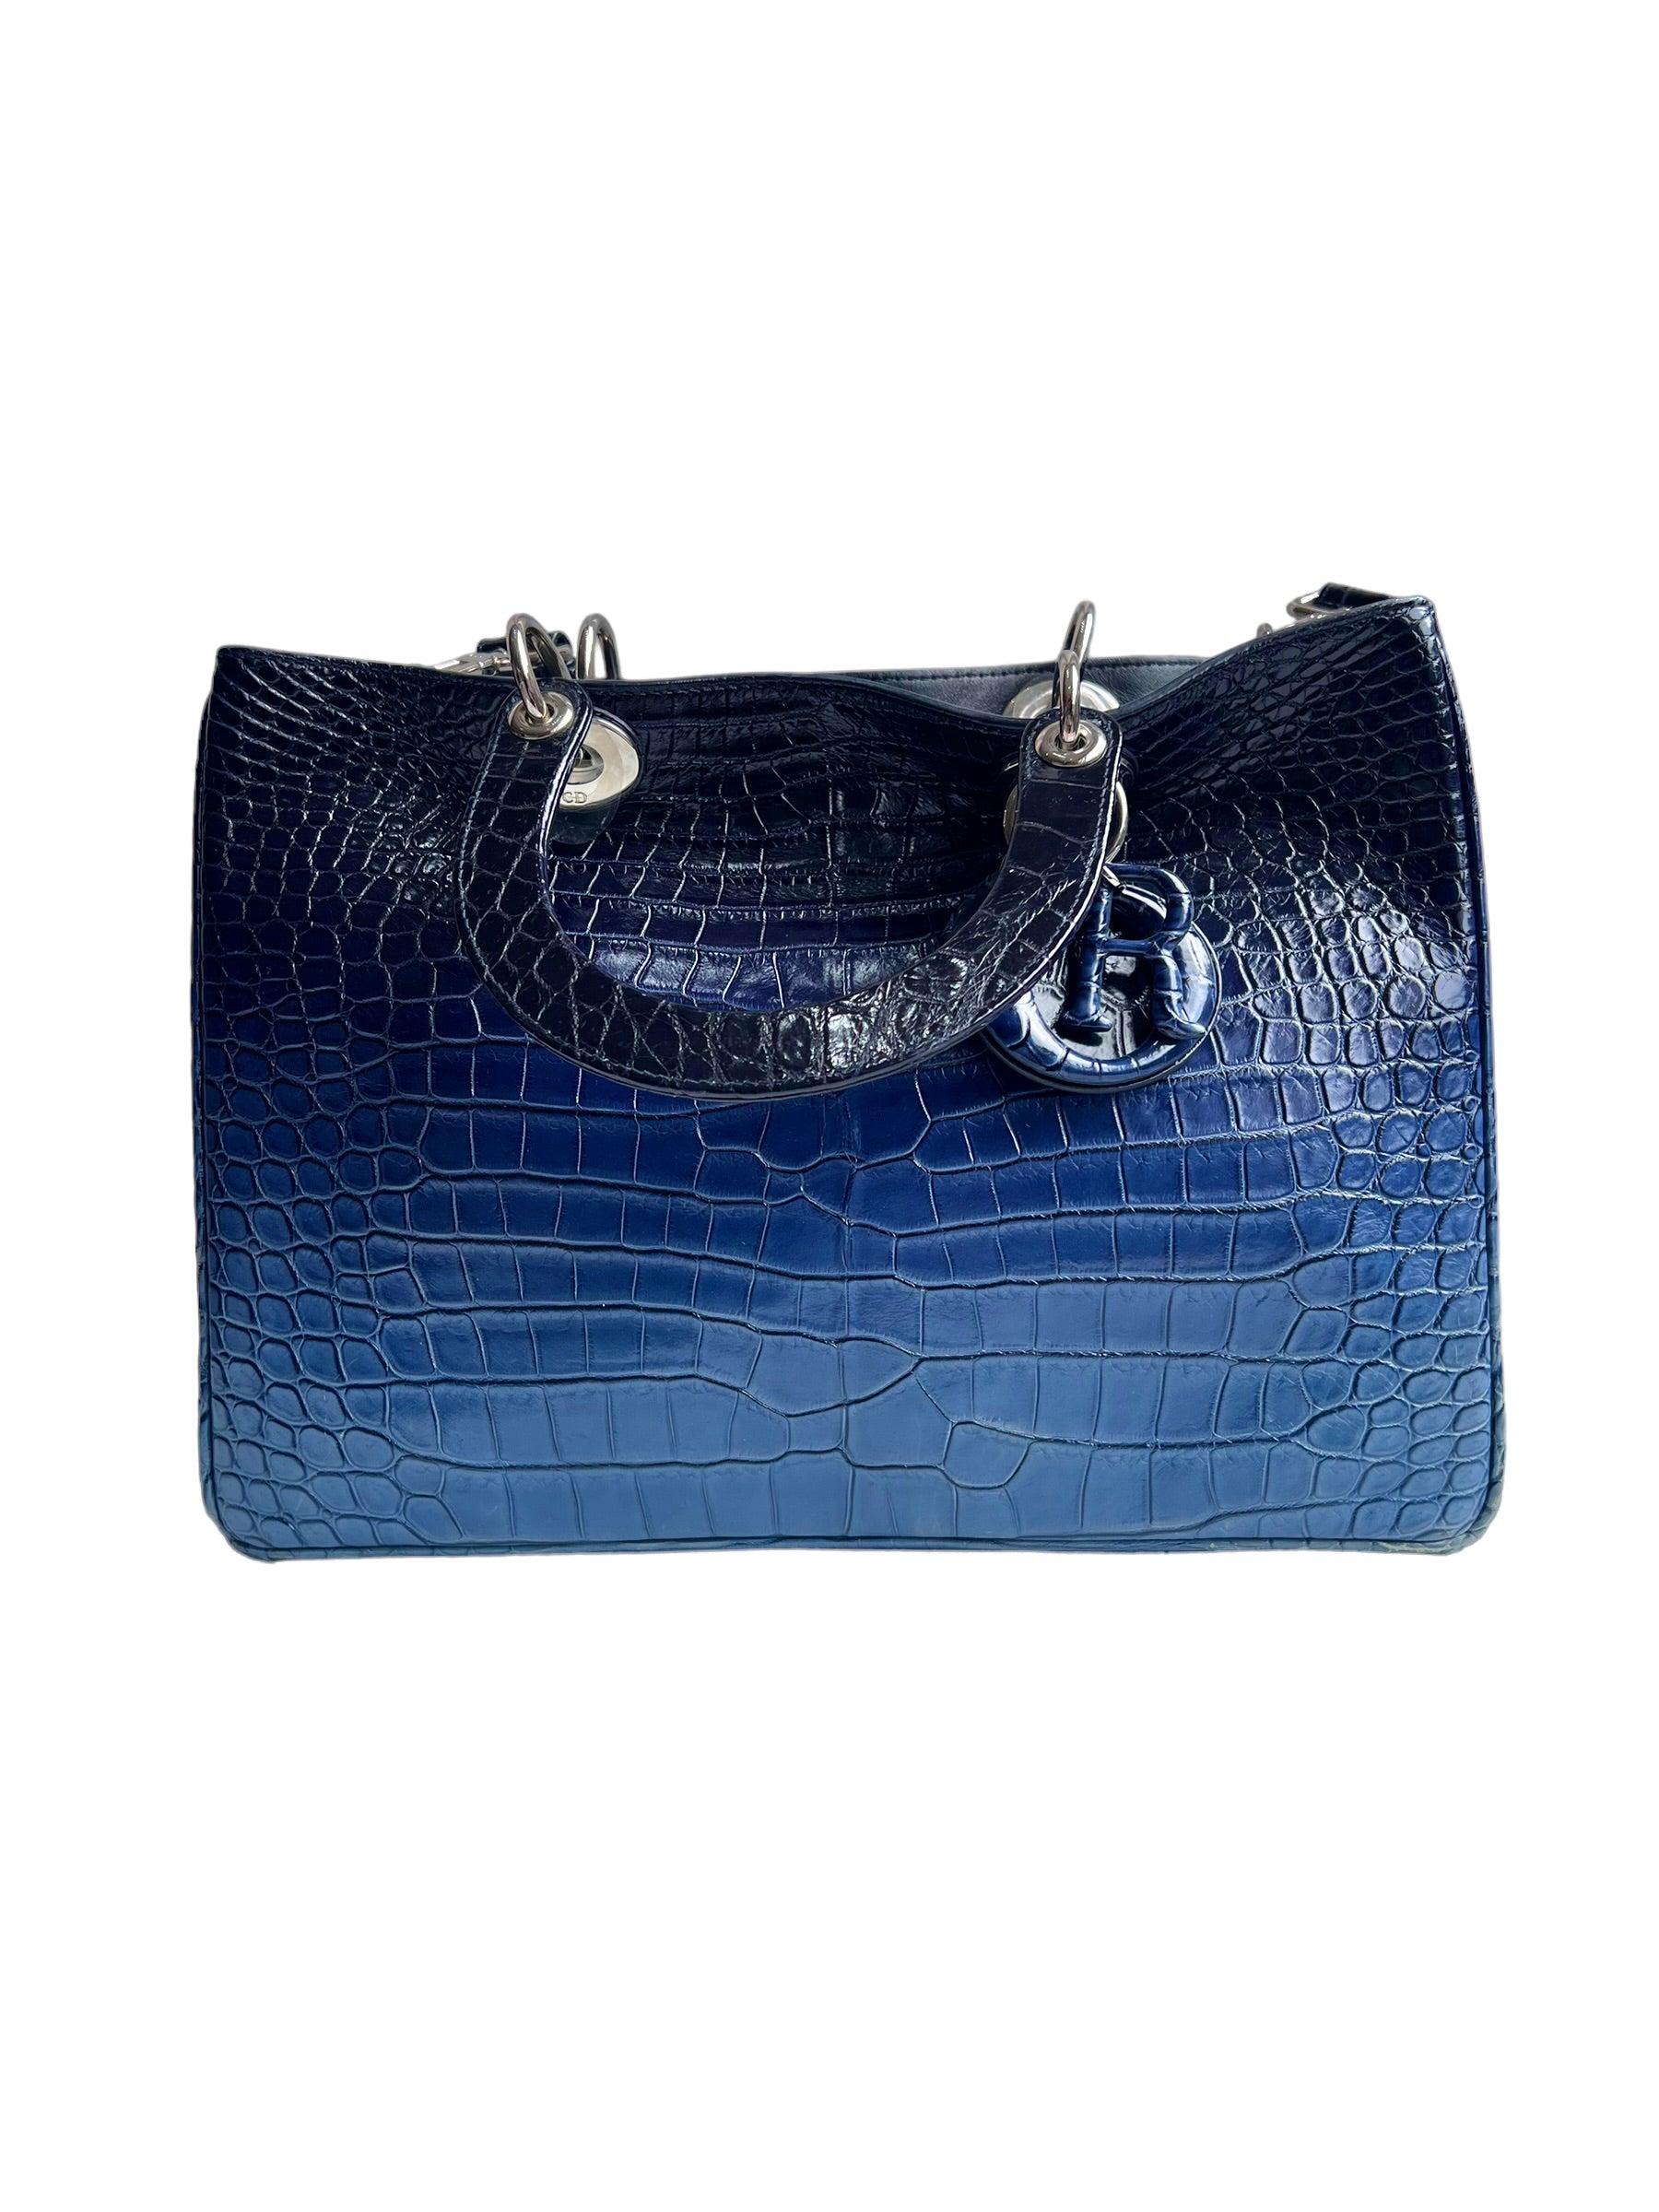 Christian Dior Diorissimo Ombre Crocodile Tote Medium Bag In Good Condition For Sale In London, GB